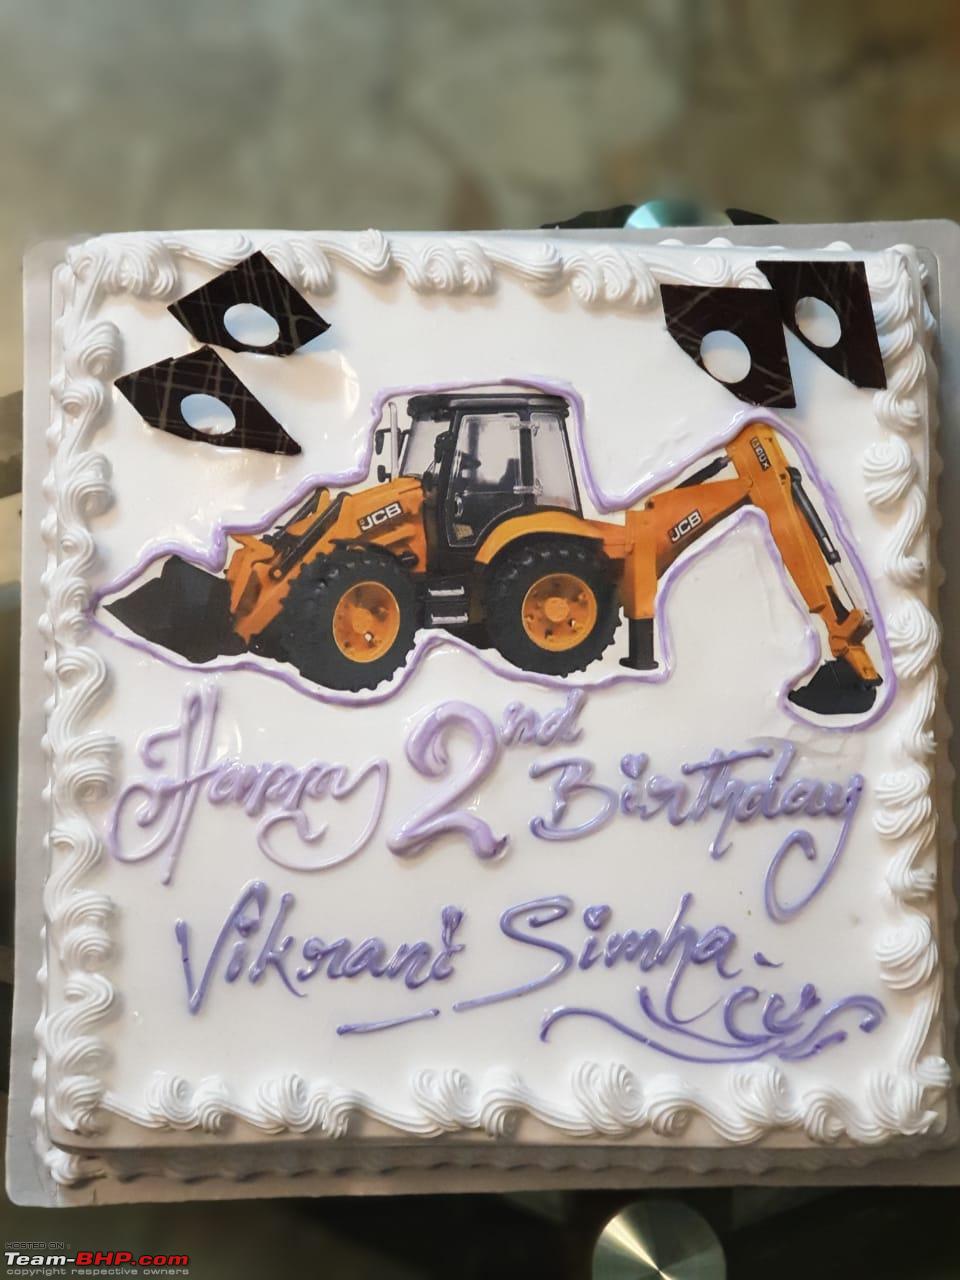 JCB Cake Design Images (JCB Birthday Cake Ideas) | Second birthday cakes, Birthday  cake kids, Construction cake